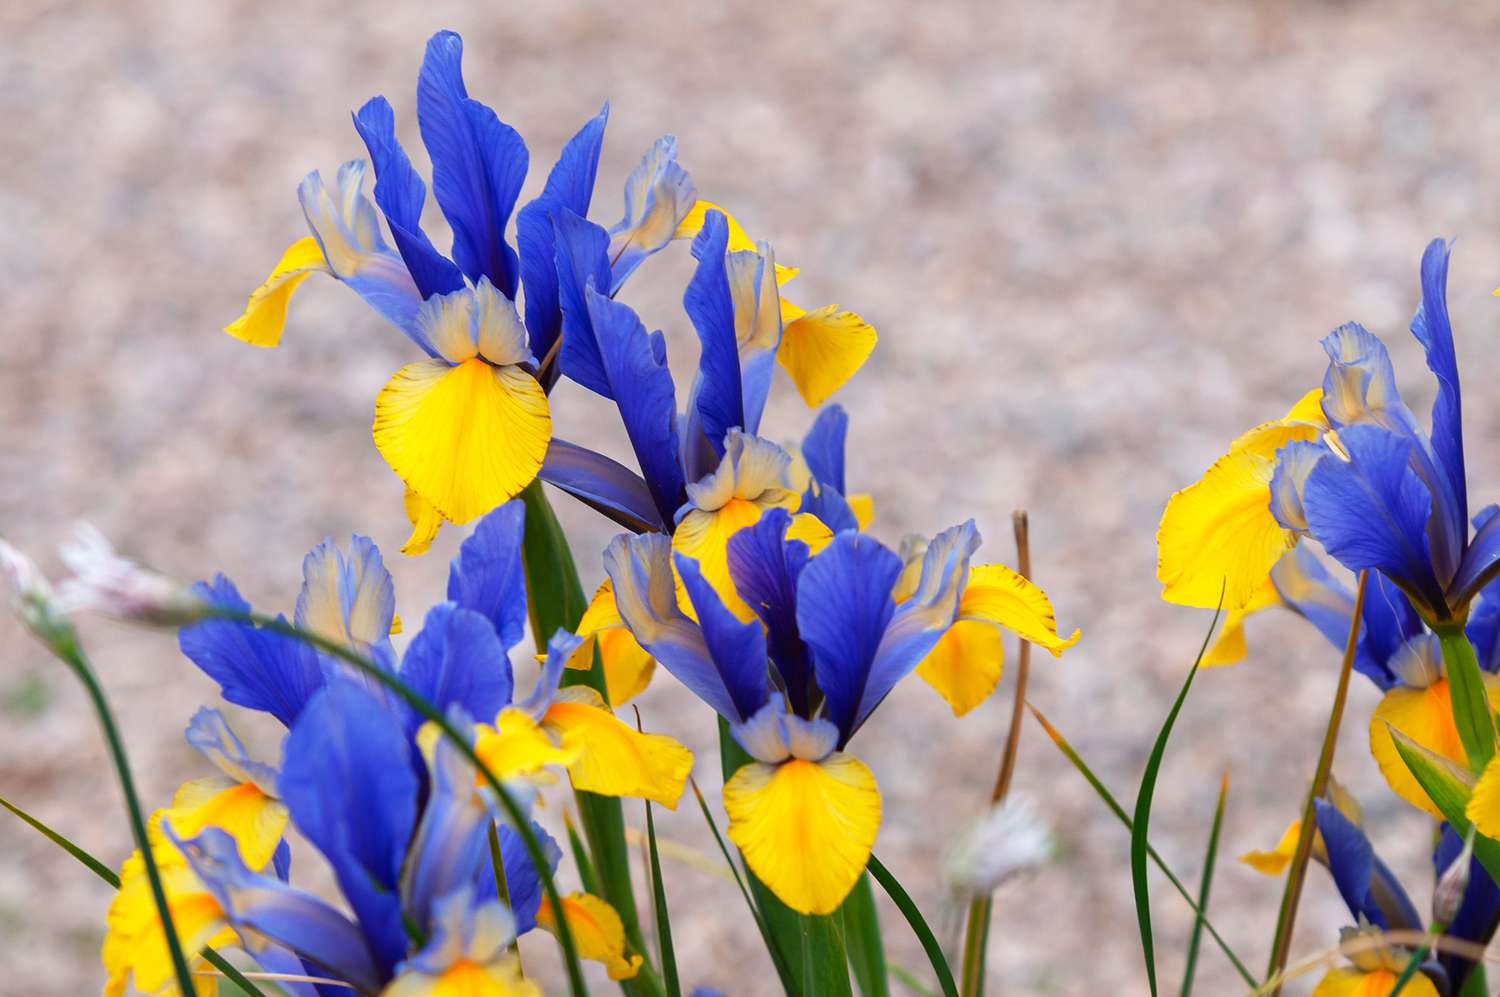 Flores de íris holandesa com pétalas azul-púrpura e amarelas com babados desabrochando